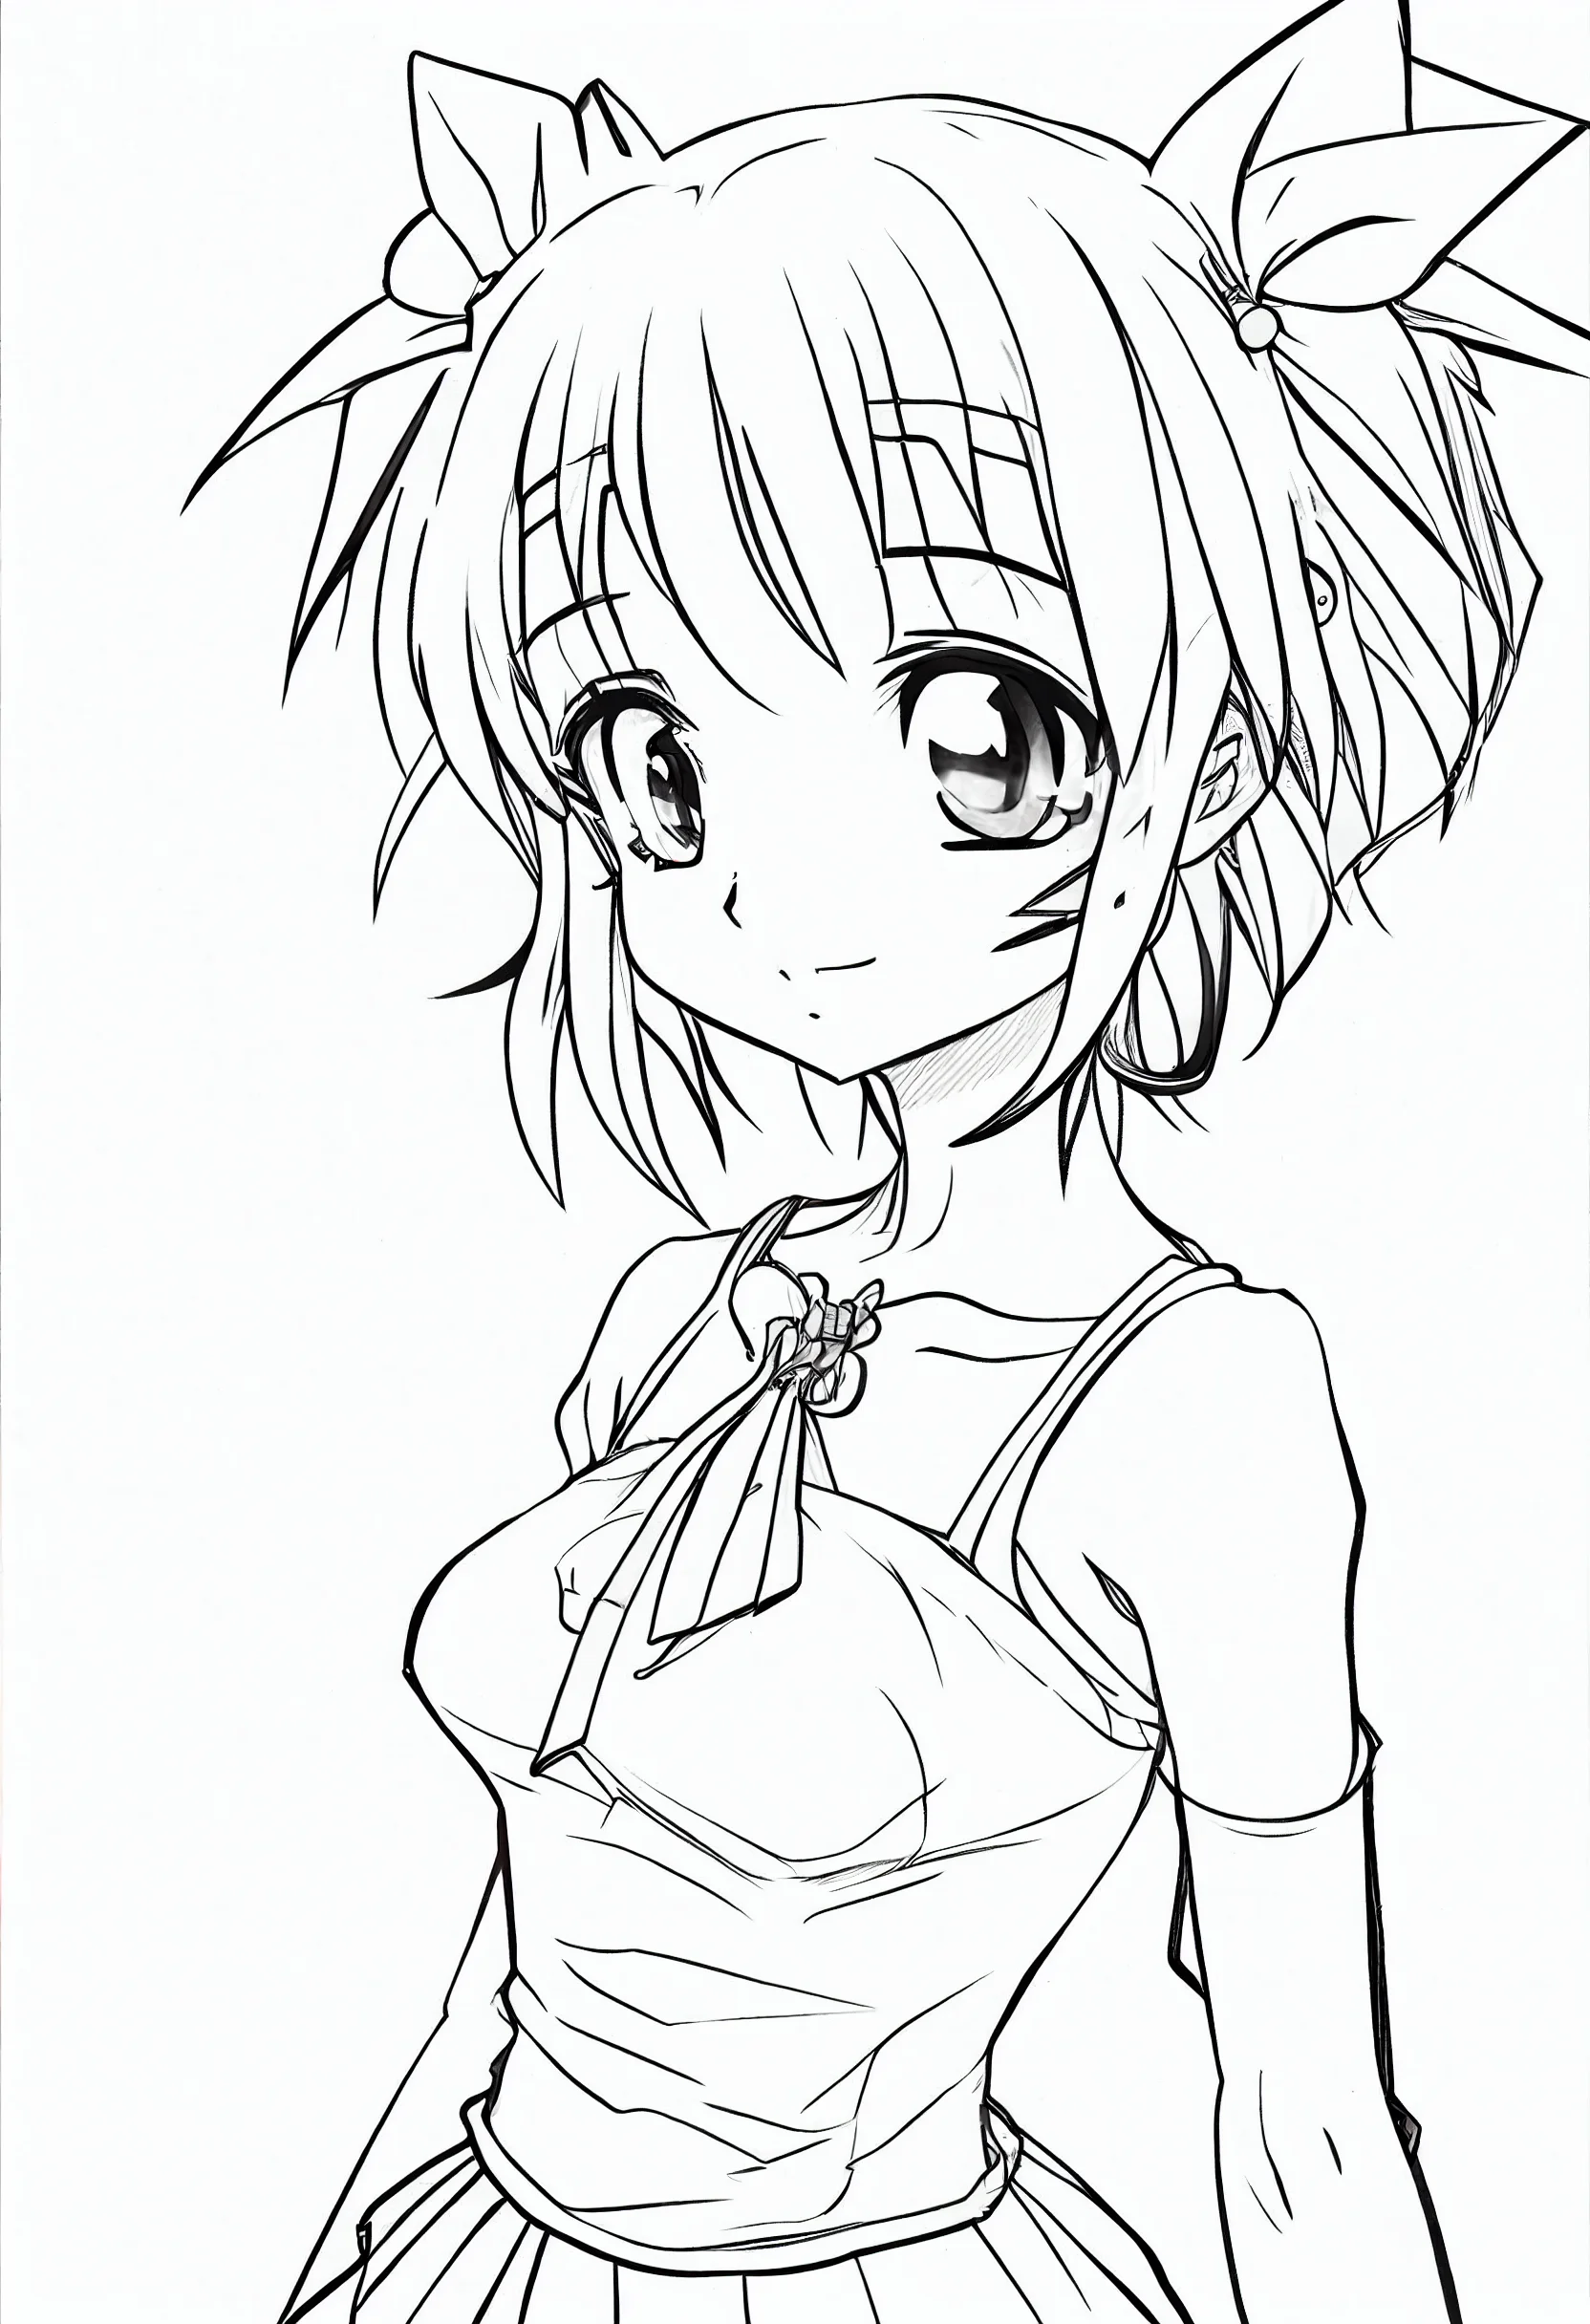 Cute anime girl drawing